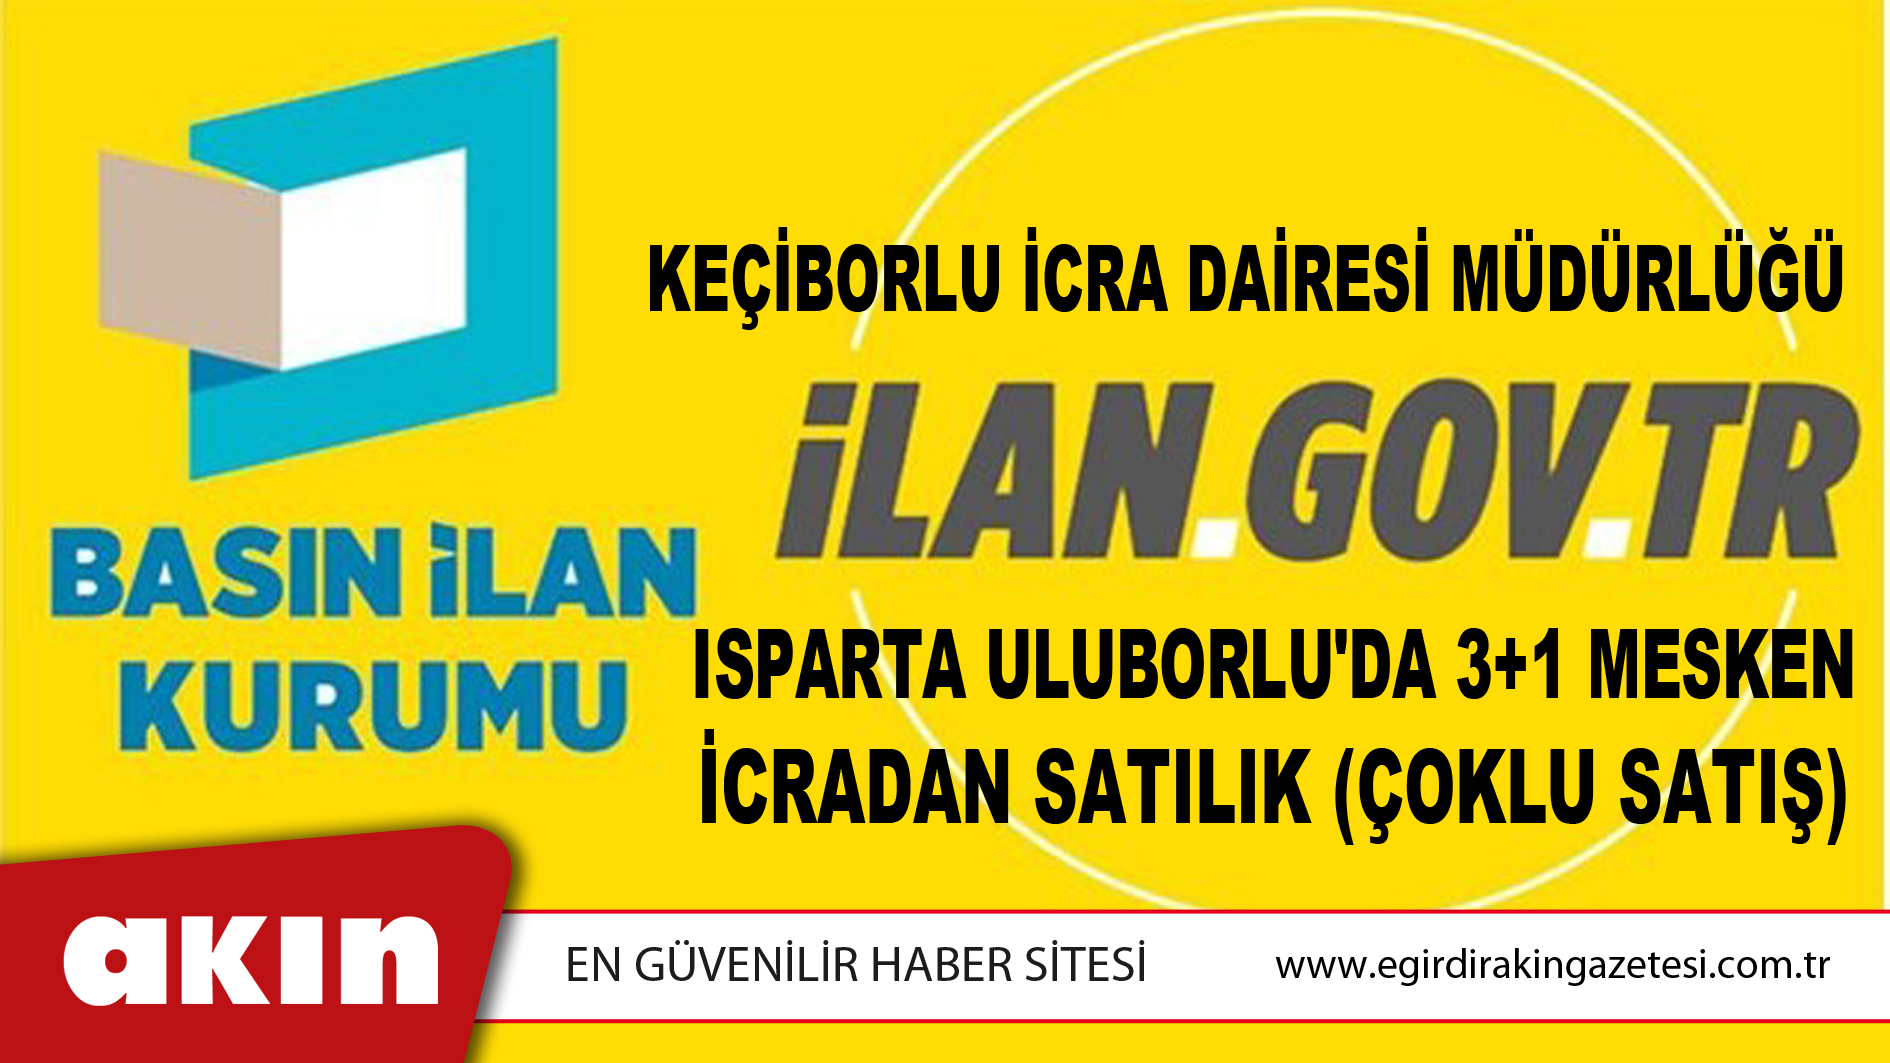 Keçiborlu İcra Dairesi Müdürlüğü Isparta Uluborlu'da 3+1 Mesken İcradan Satılık (Çoklu Satış)